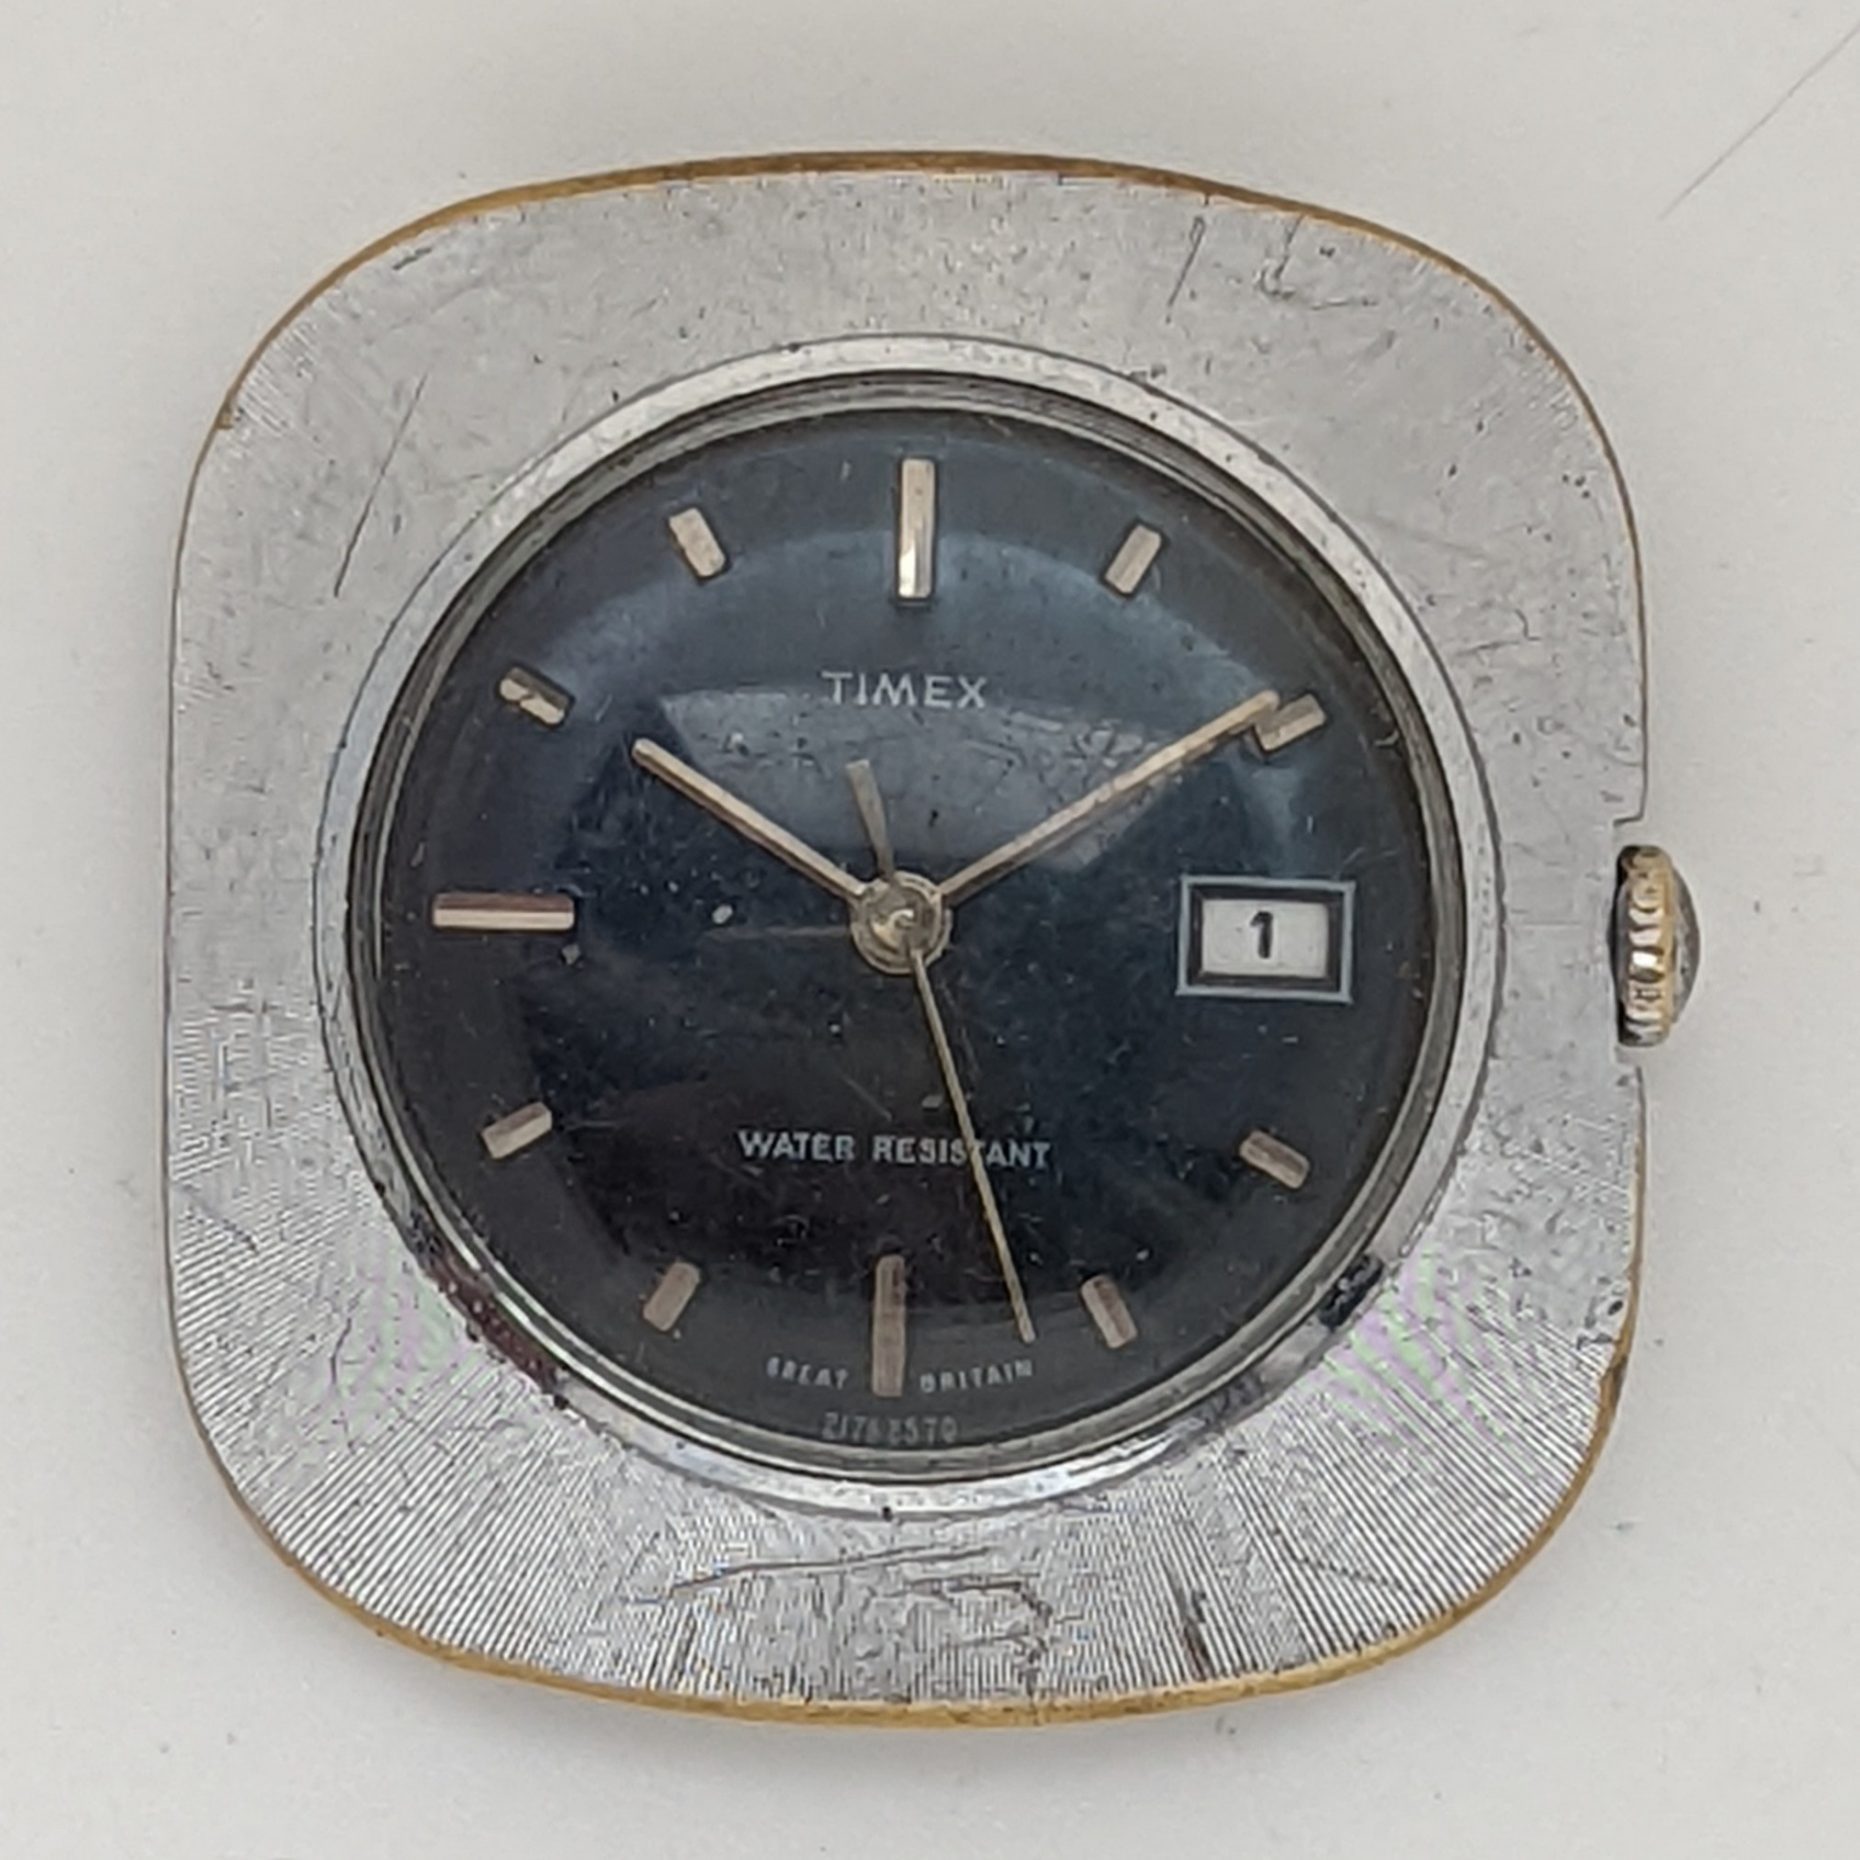 Timex Marlin 2717 2570 [1970]